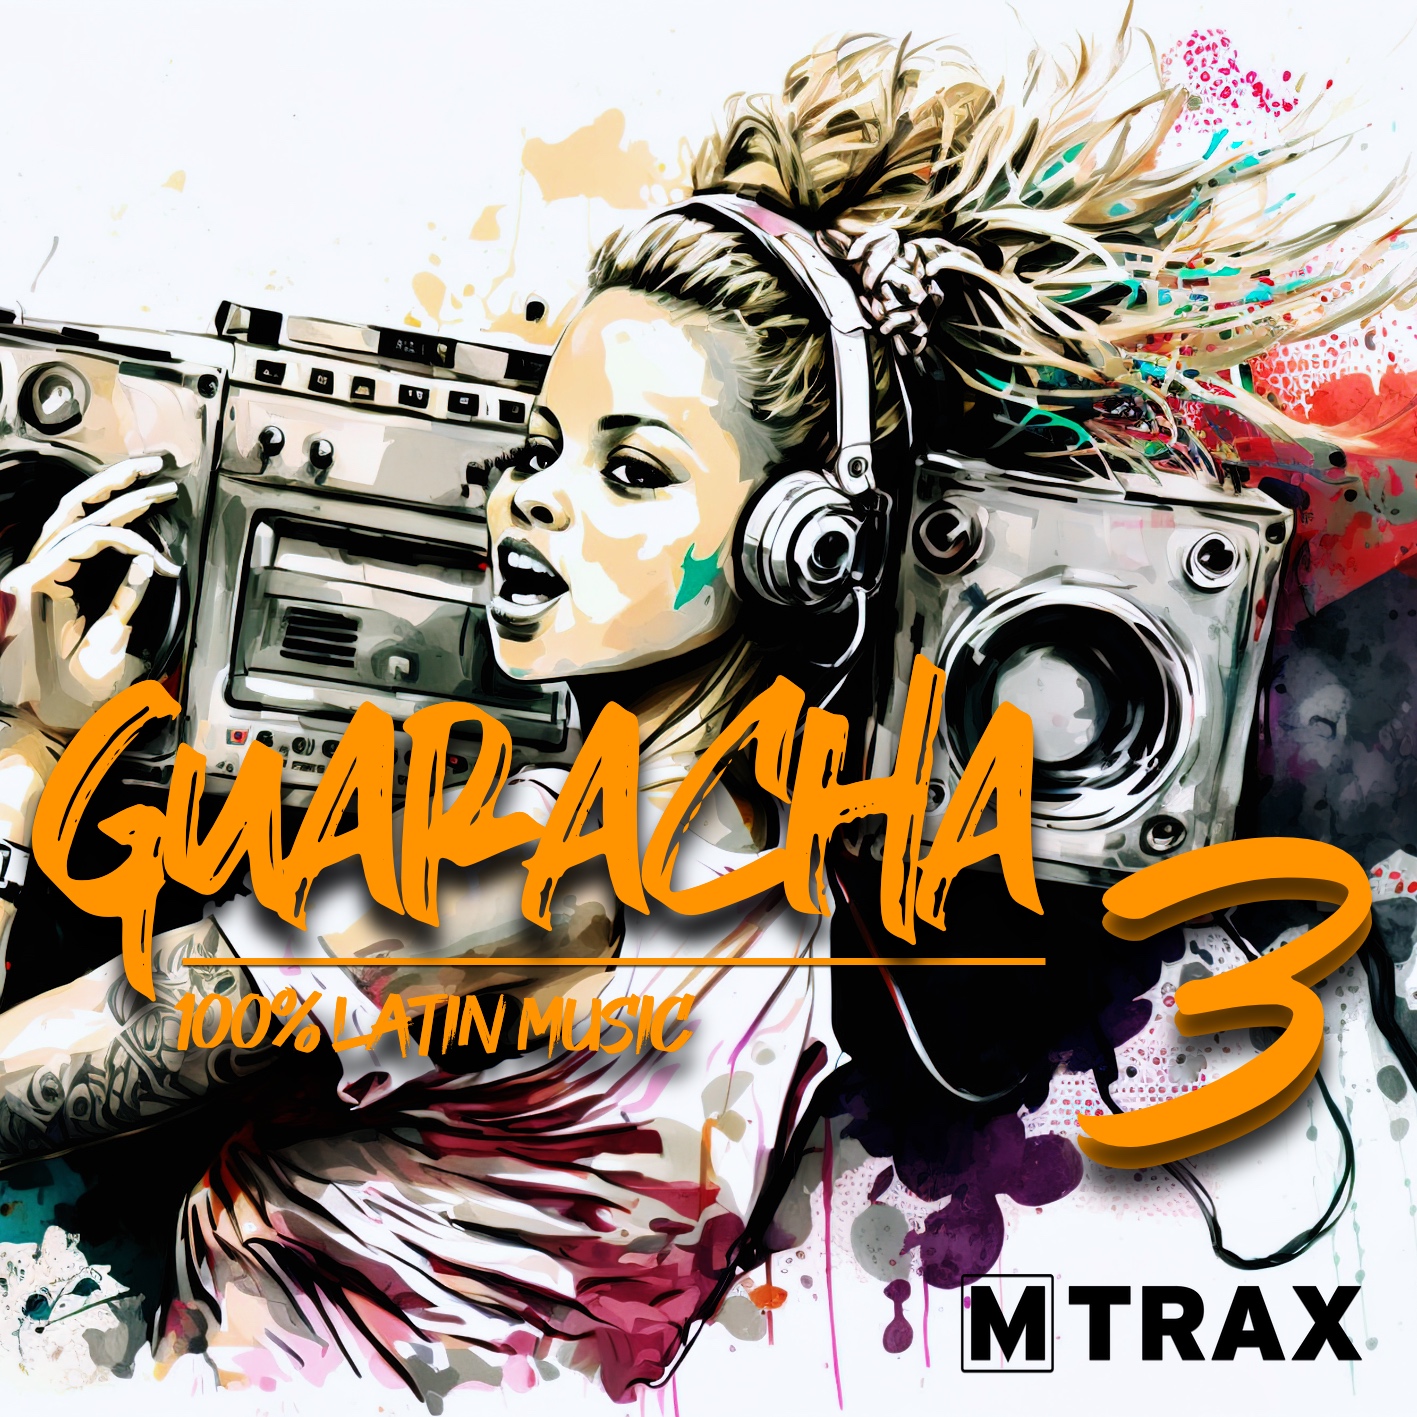 MTRAX Guaracha 3 - 100% Latin Music (CD)